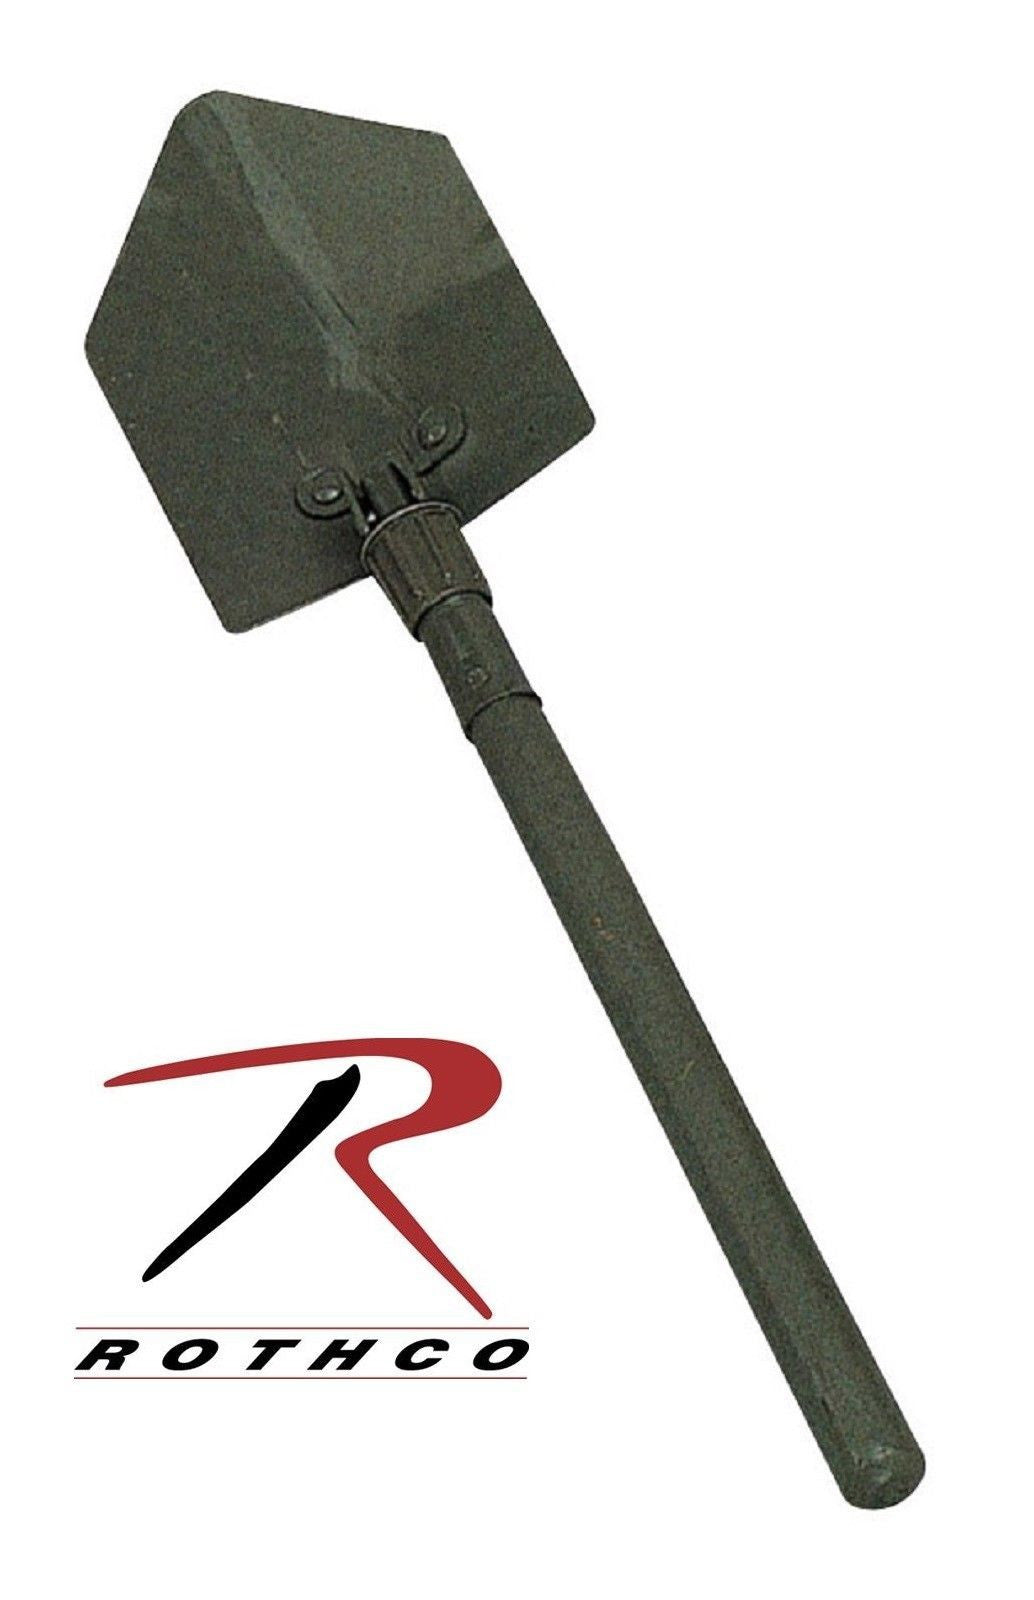 Rothco G.I. Type Folding Shovel - Olive Drab Foldable Steel Shovel w Wood Handle